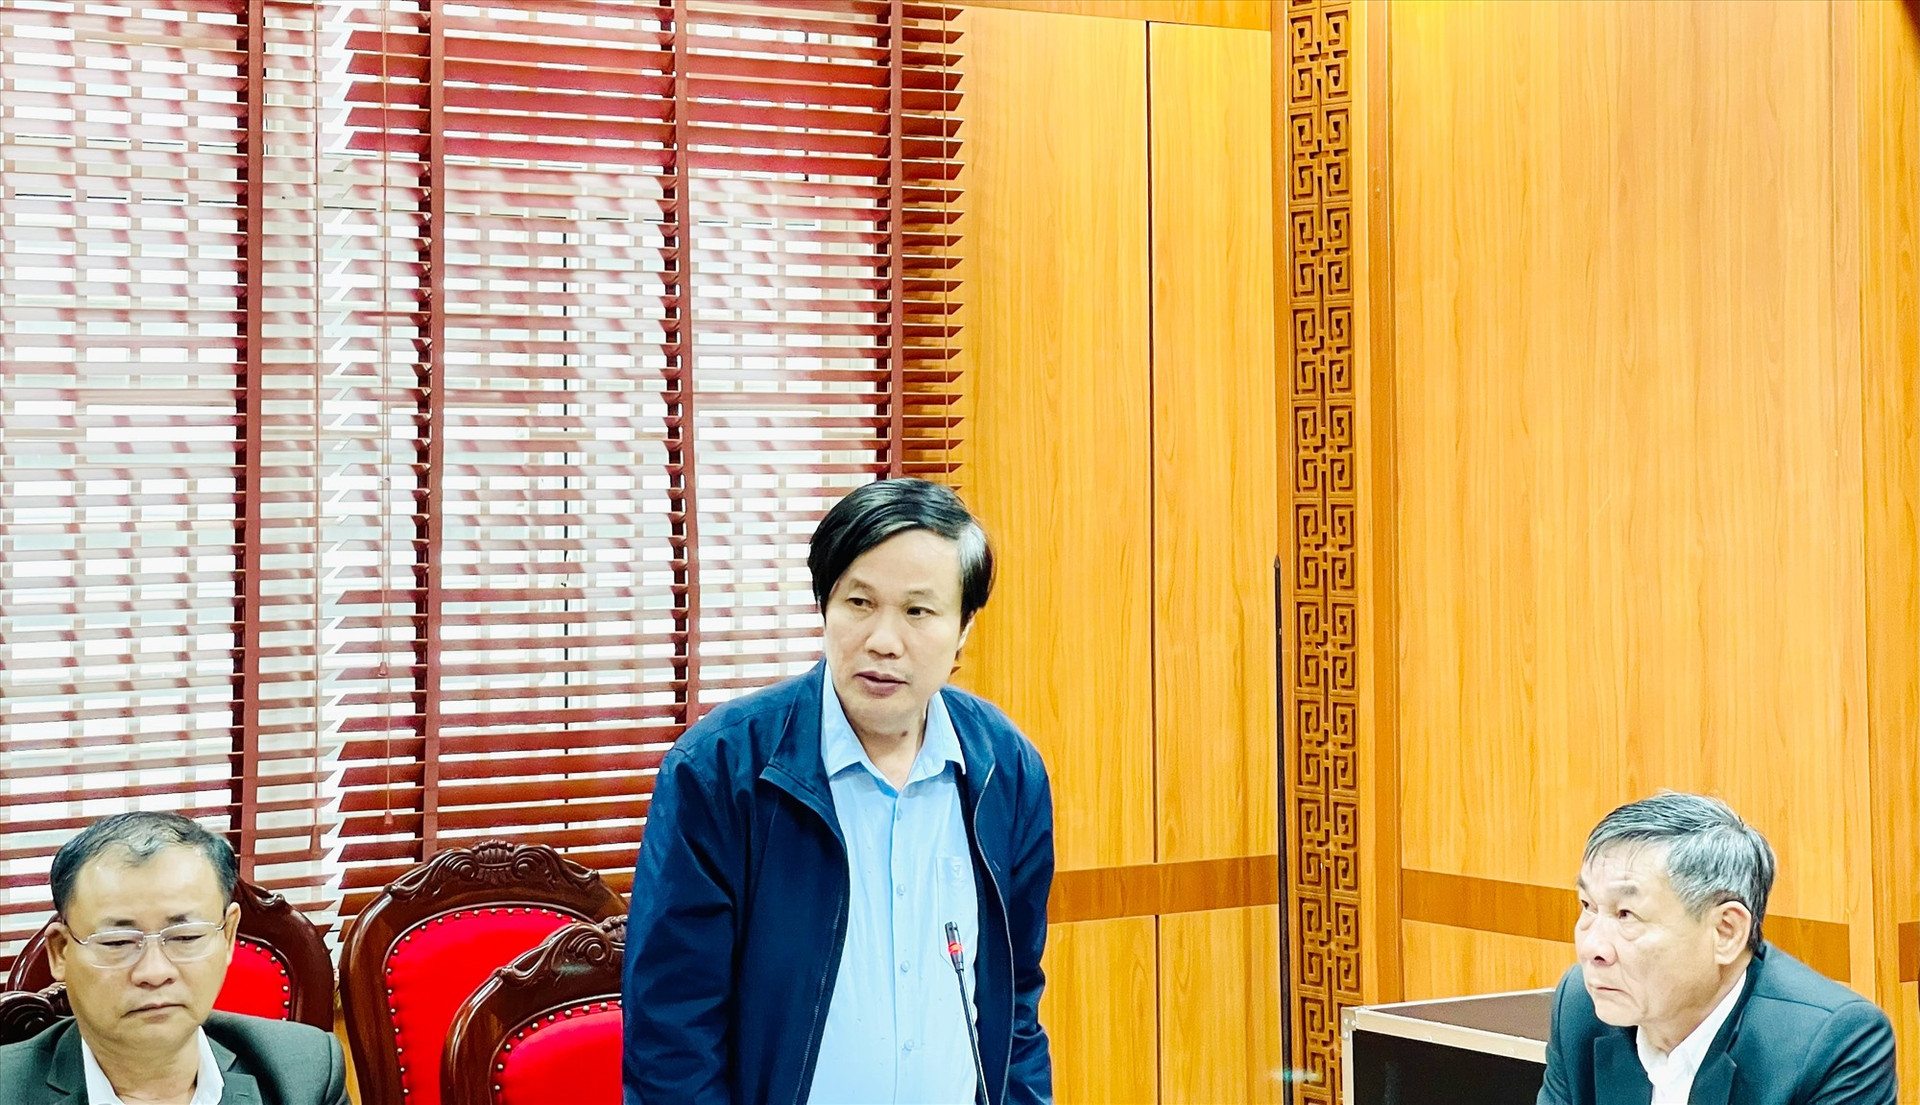 PGS-TS. Ngô Văn Minh (Học viện Chính trị khu vực III) phát biểu tại buổi hội thảo.  Ảnh: N.T